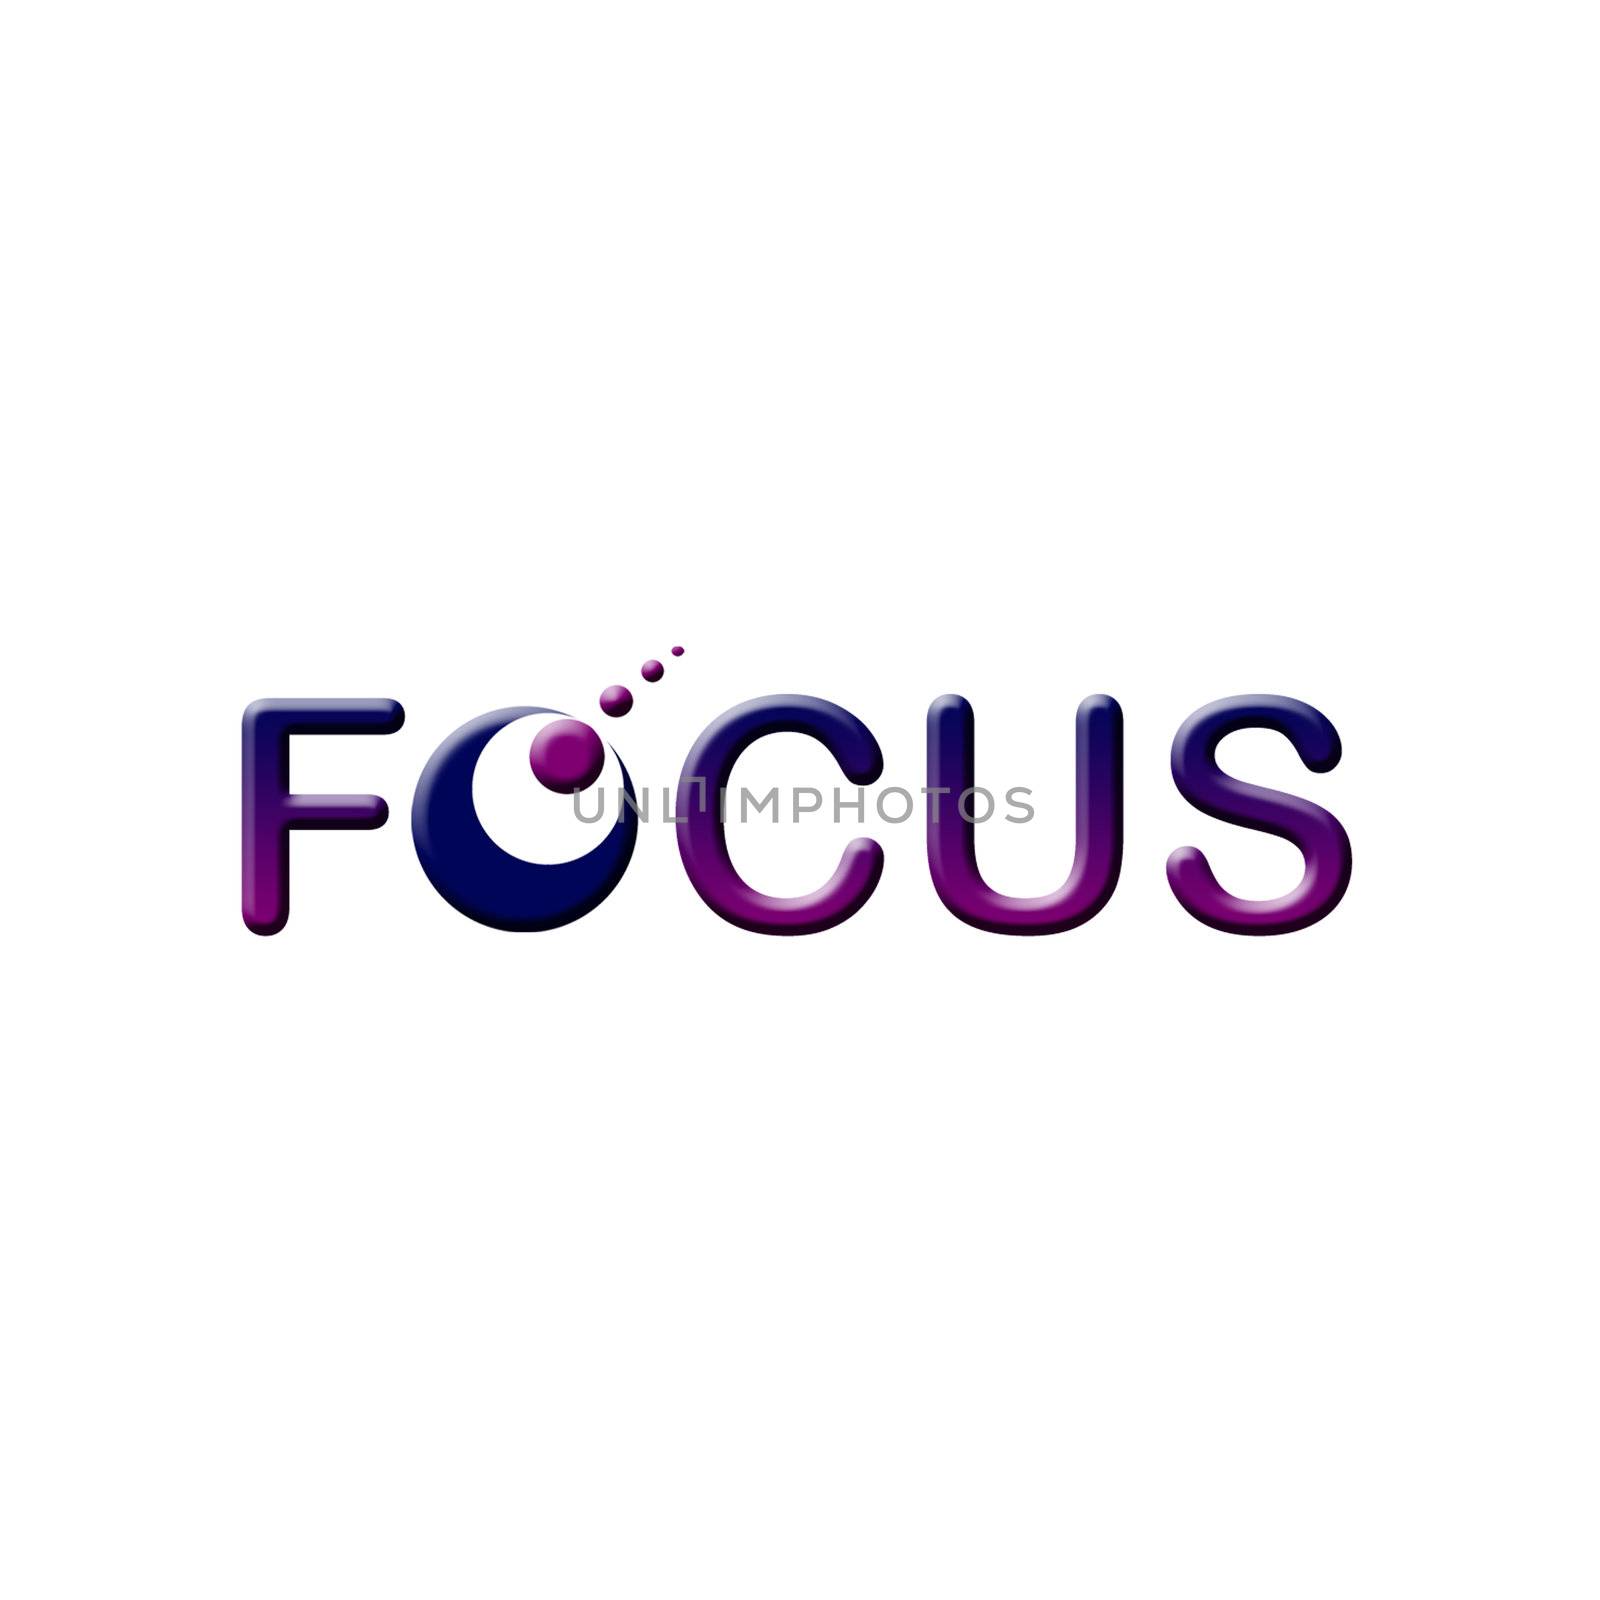 Focus logo by shawlinmohd